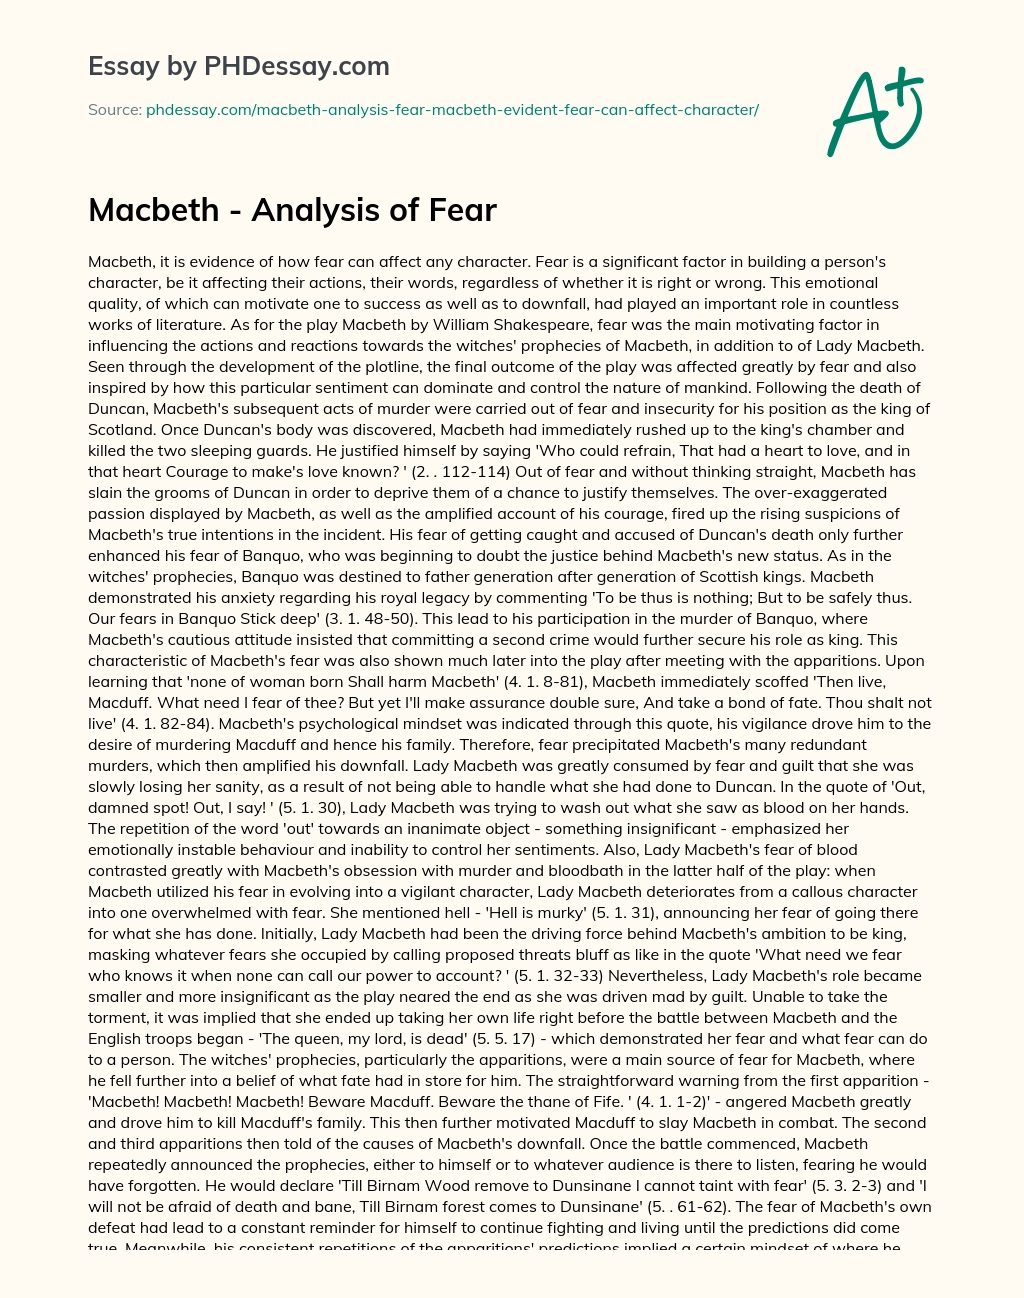 Macbeth – Analysis of Fear essay